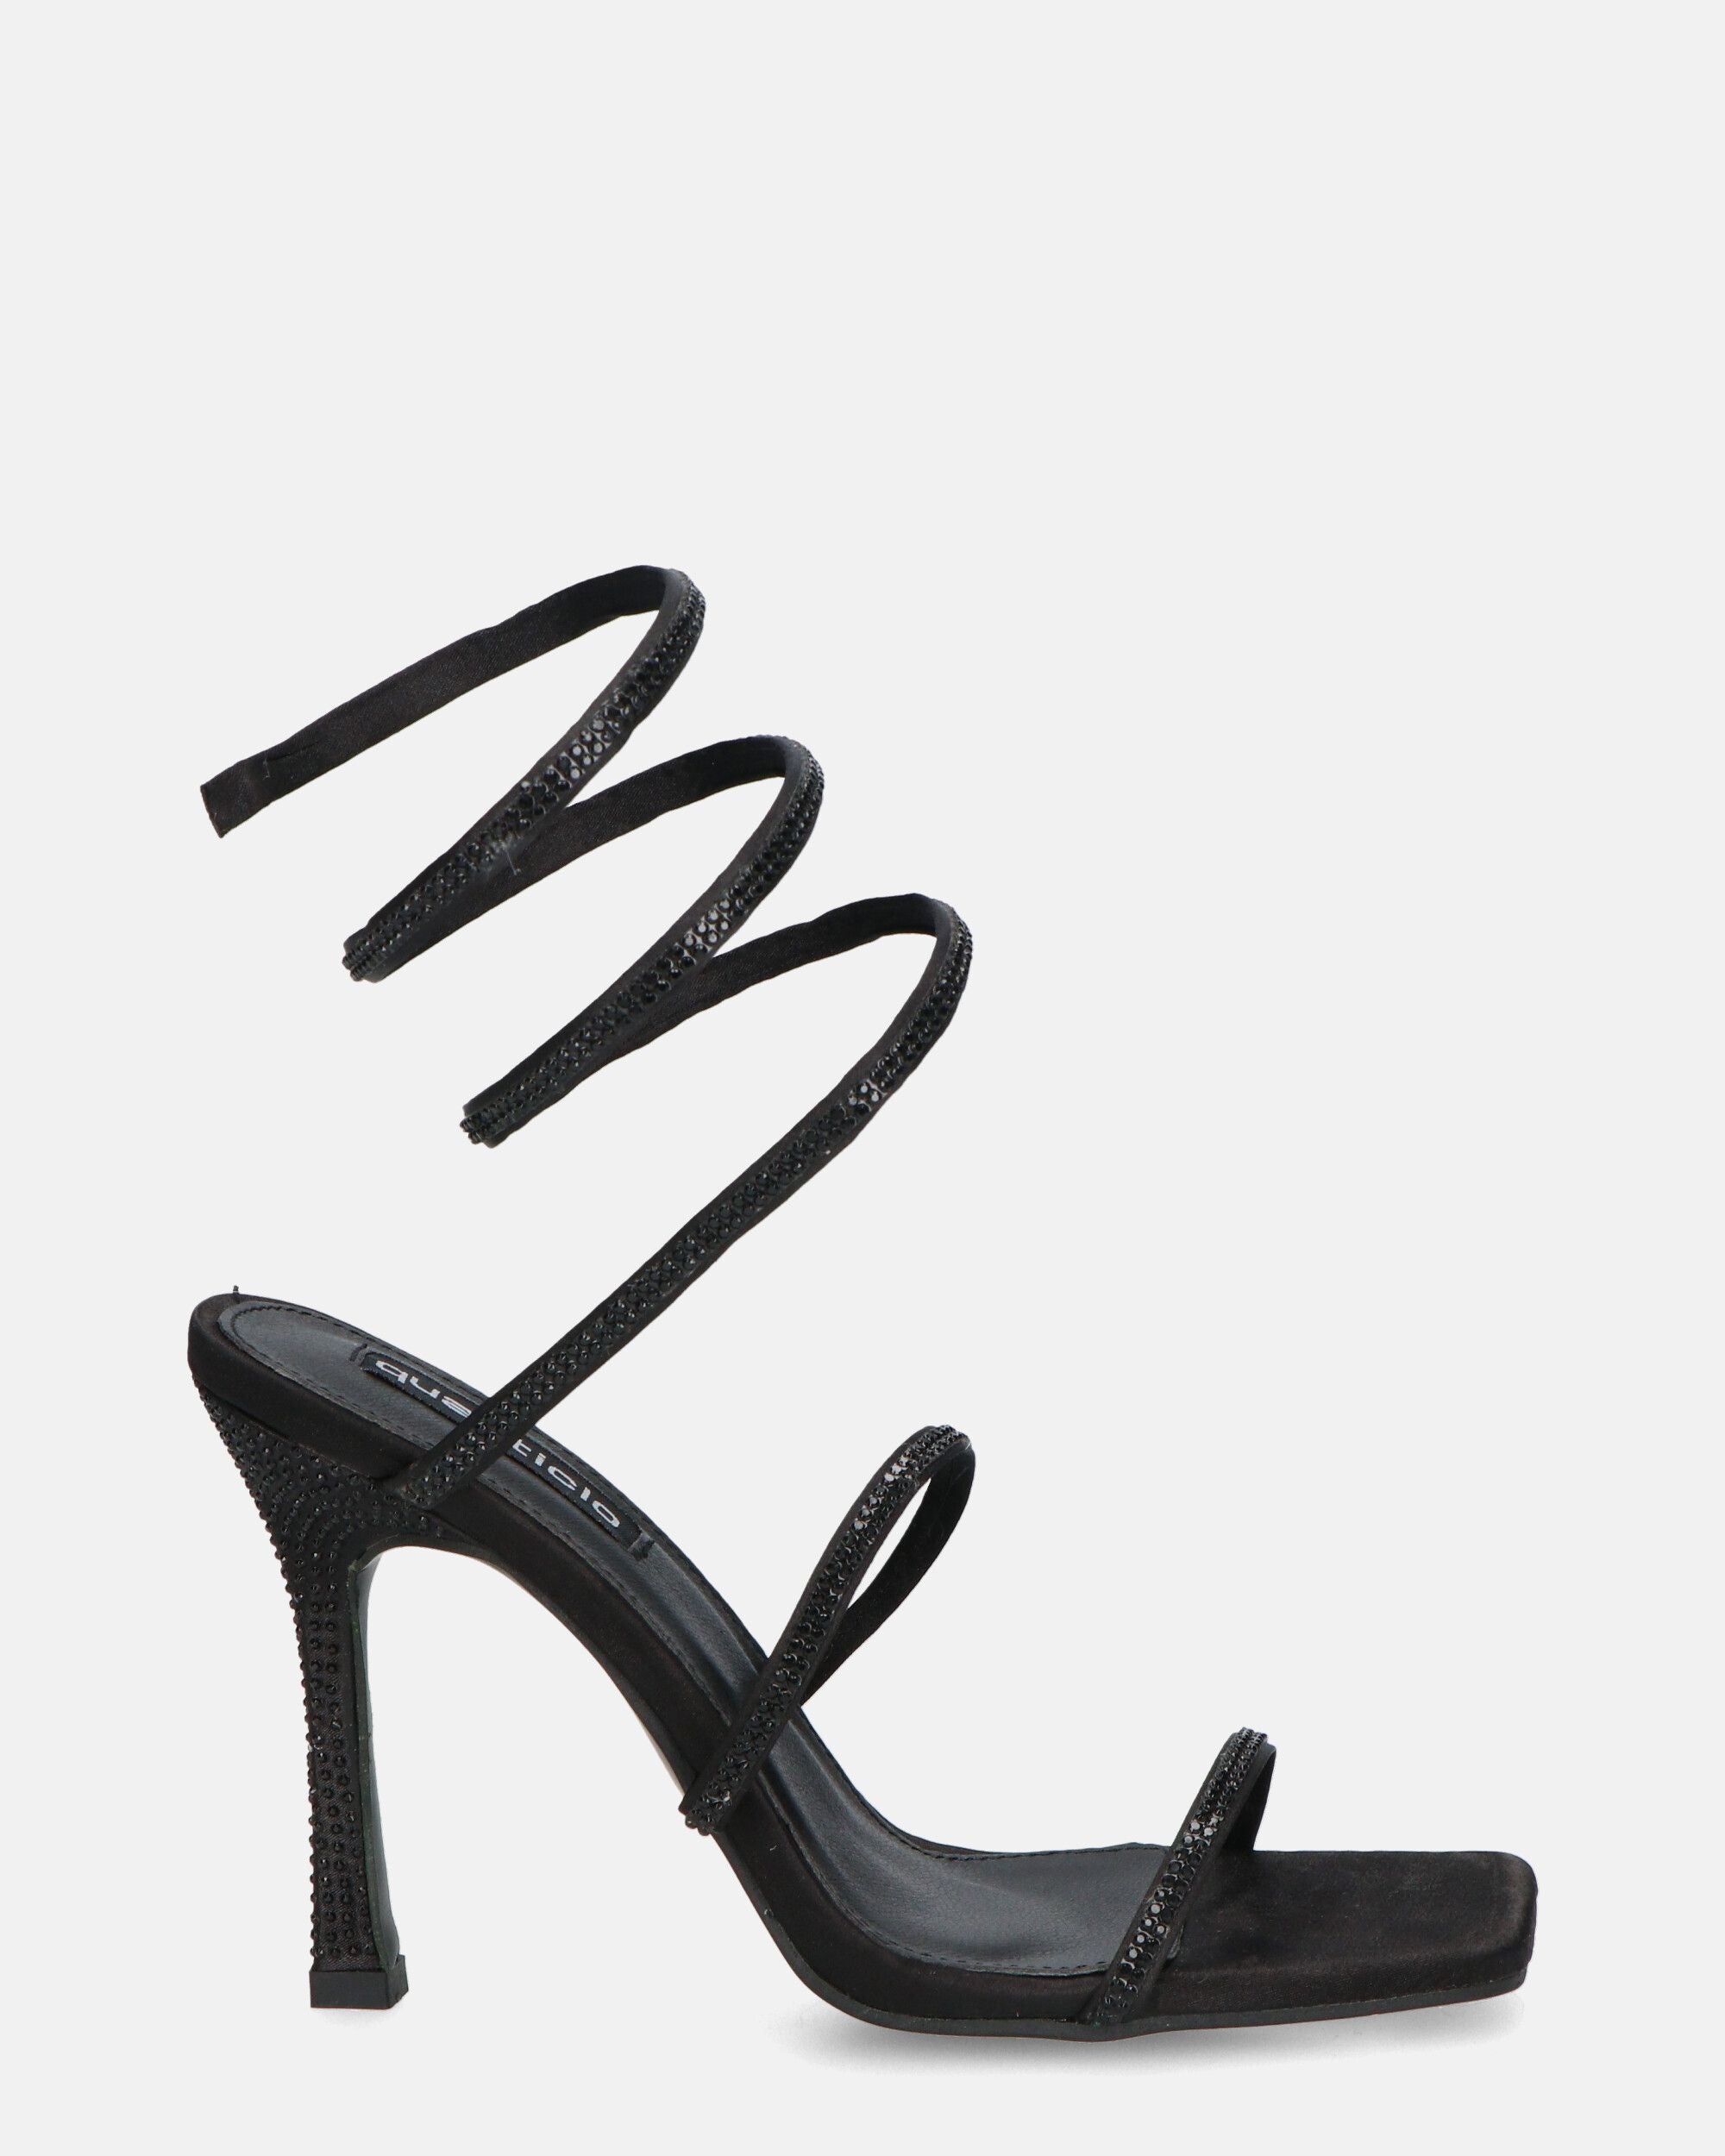 NORA - black spiral high heels with gems